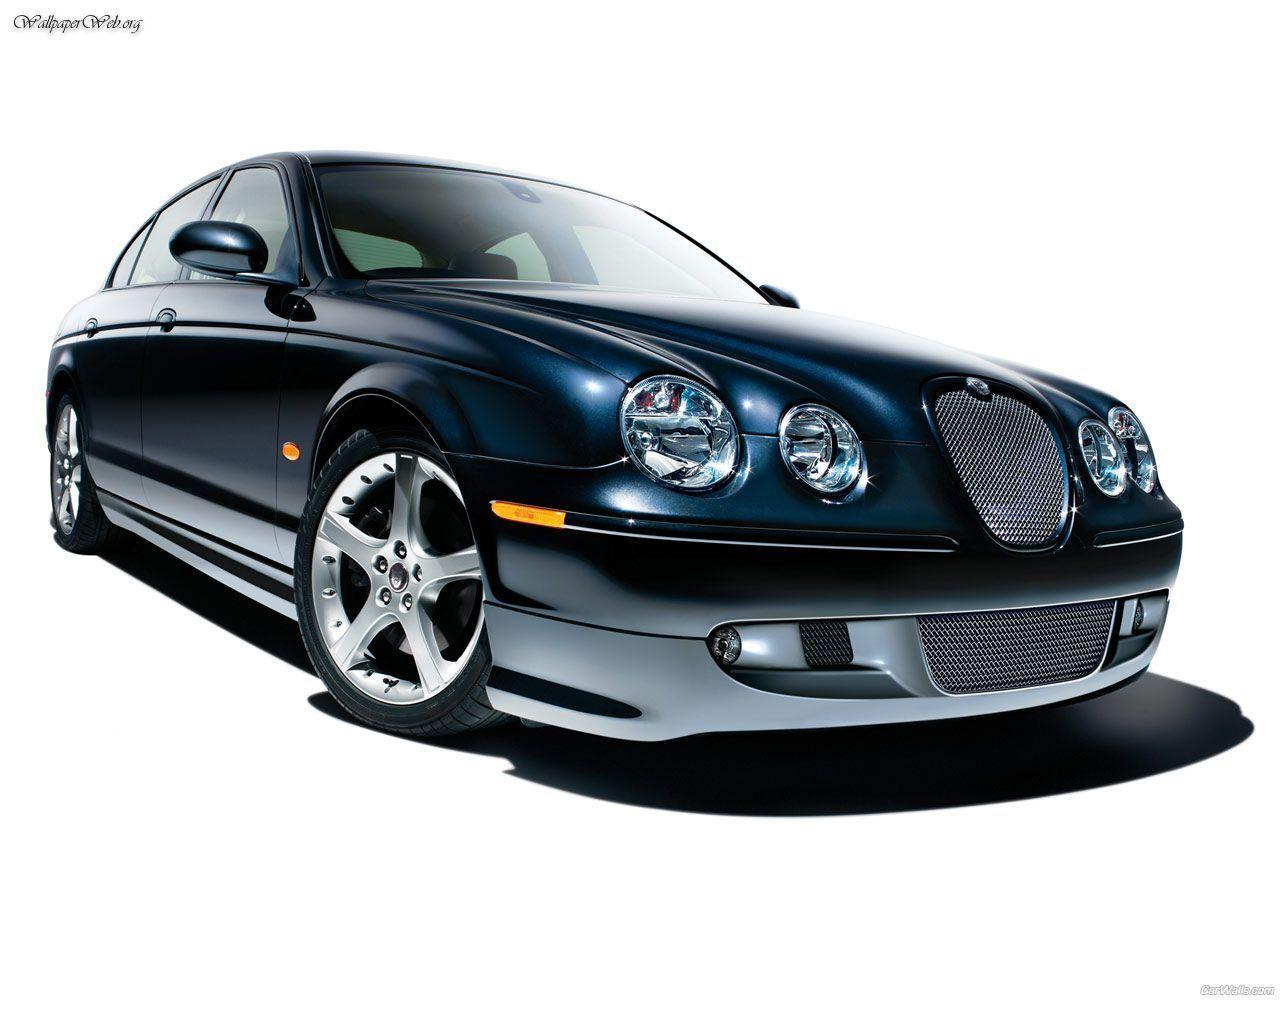 Cars: Jaguar S Type, Picture Nr. 28593